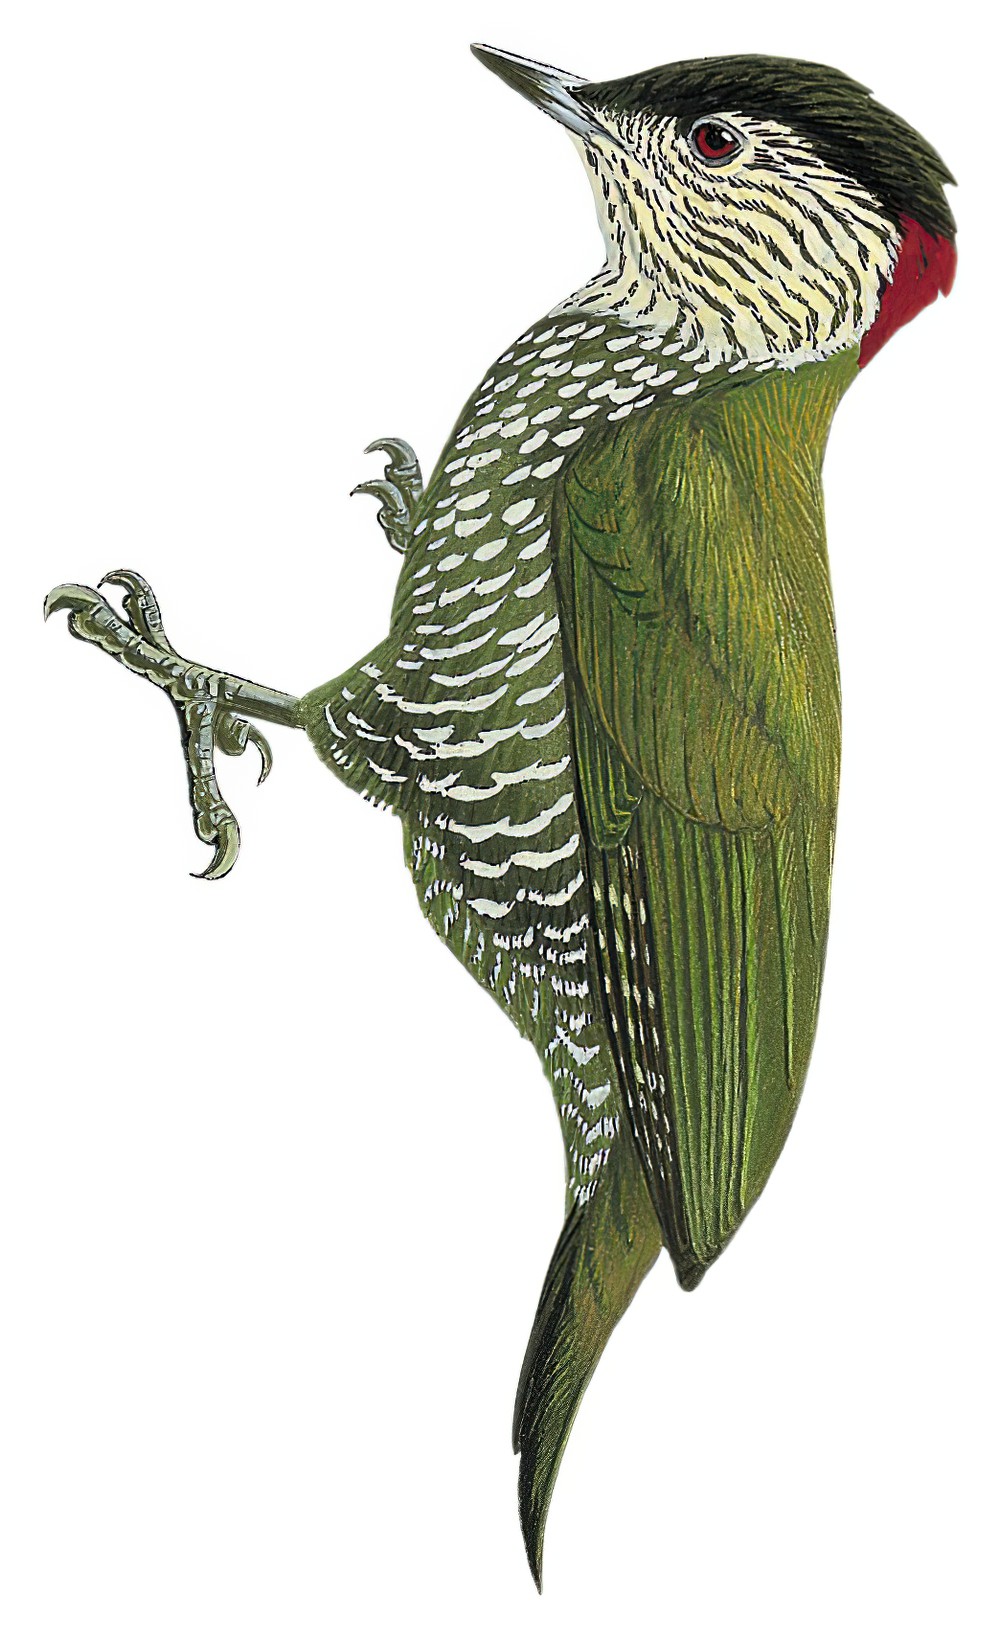 Buff-spotted Woodpecker / Campethera nivosa